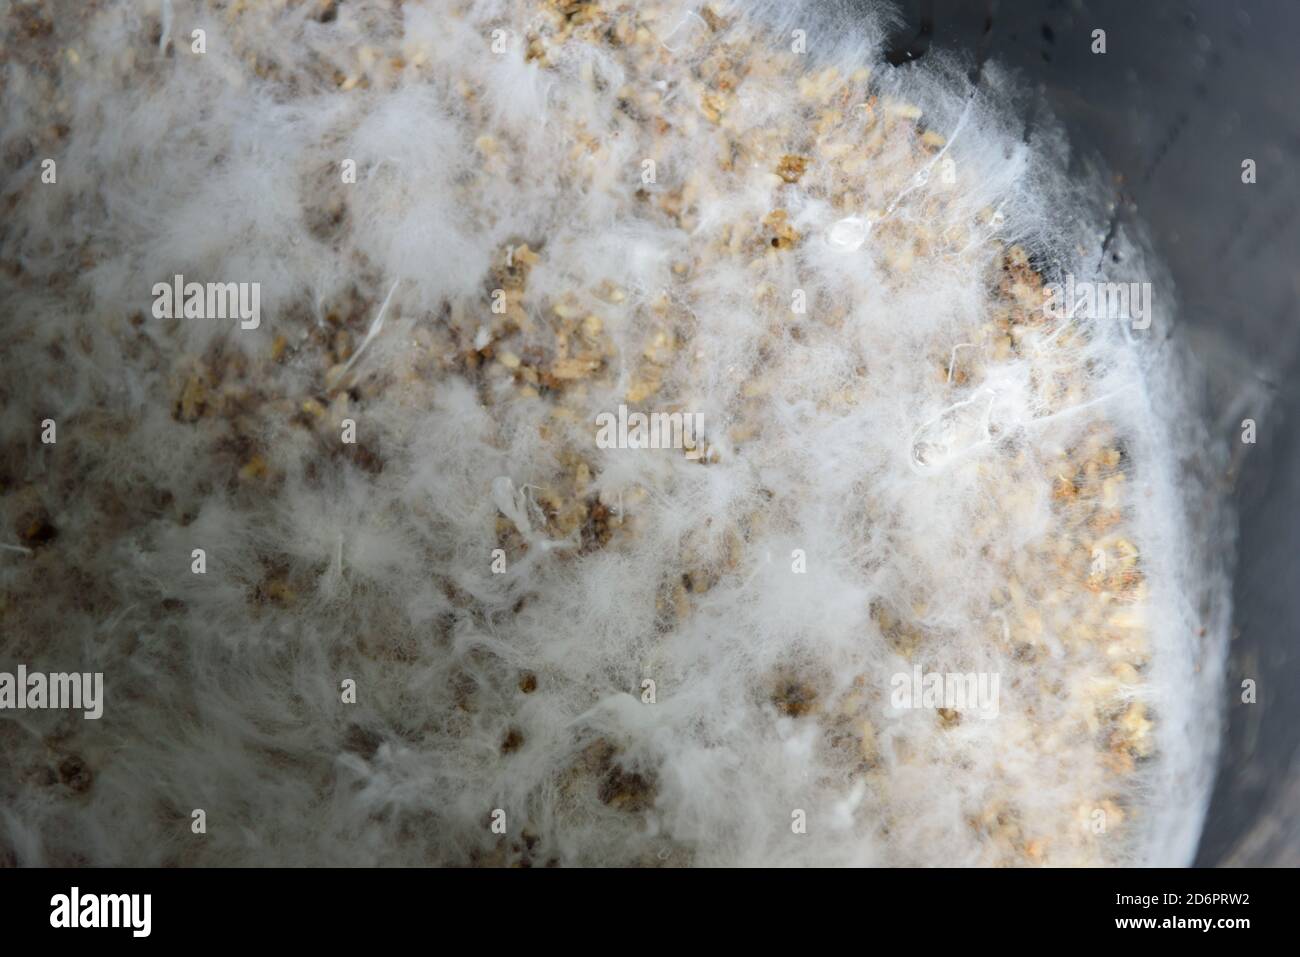 Closeup to Fungi microorganism Termites in the Bin Stock Photo